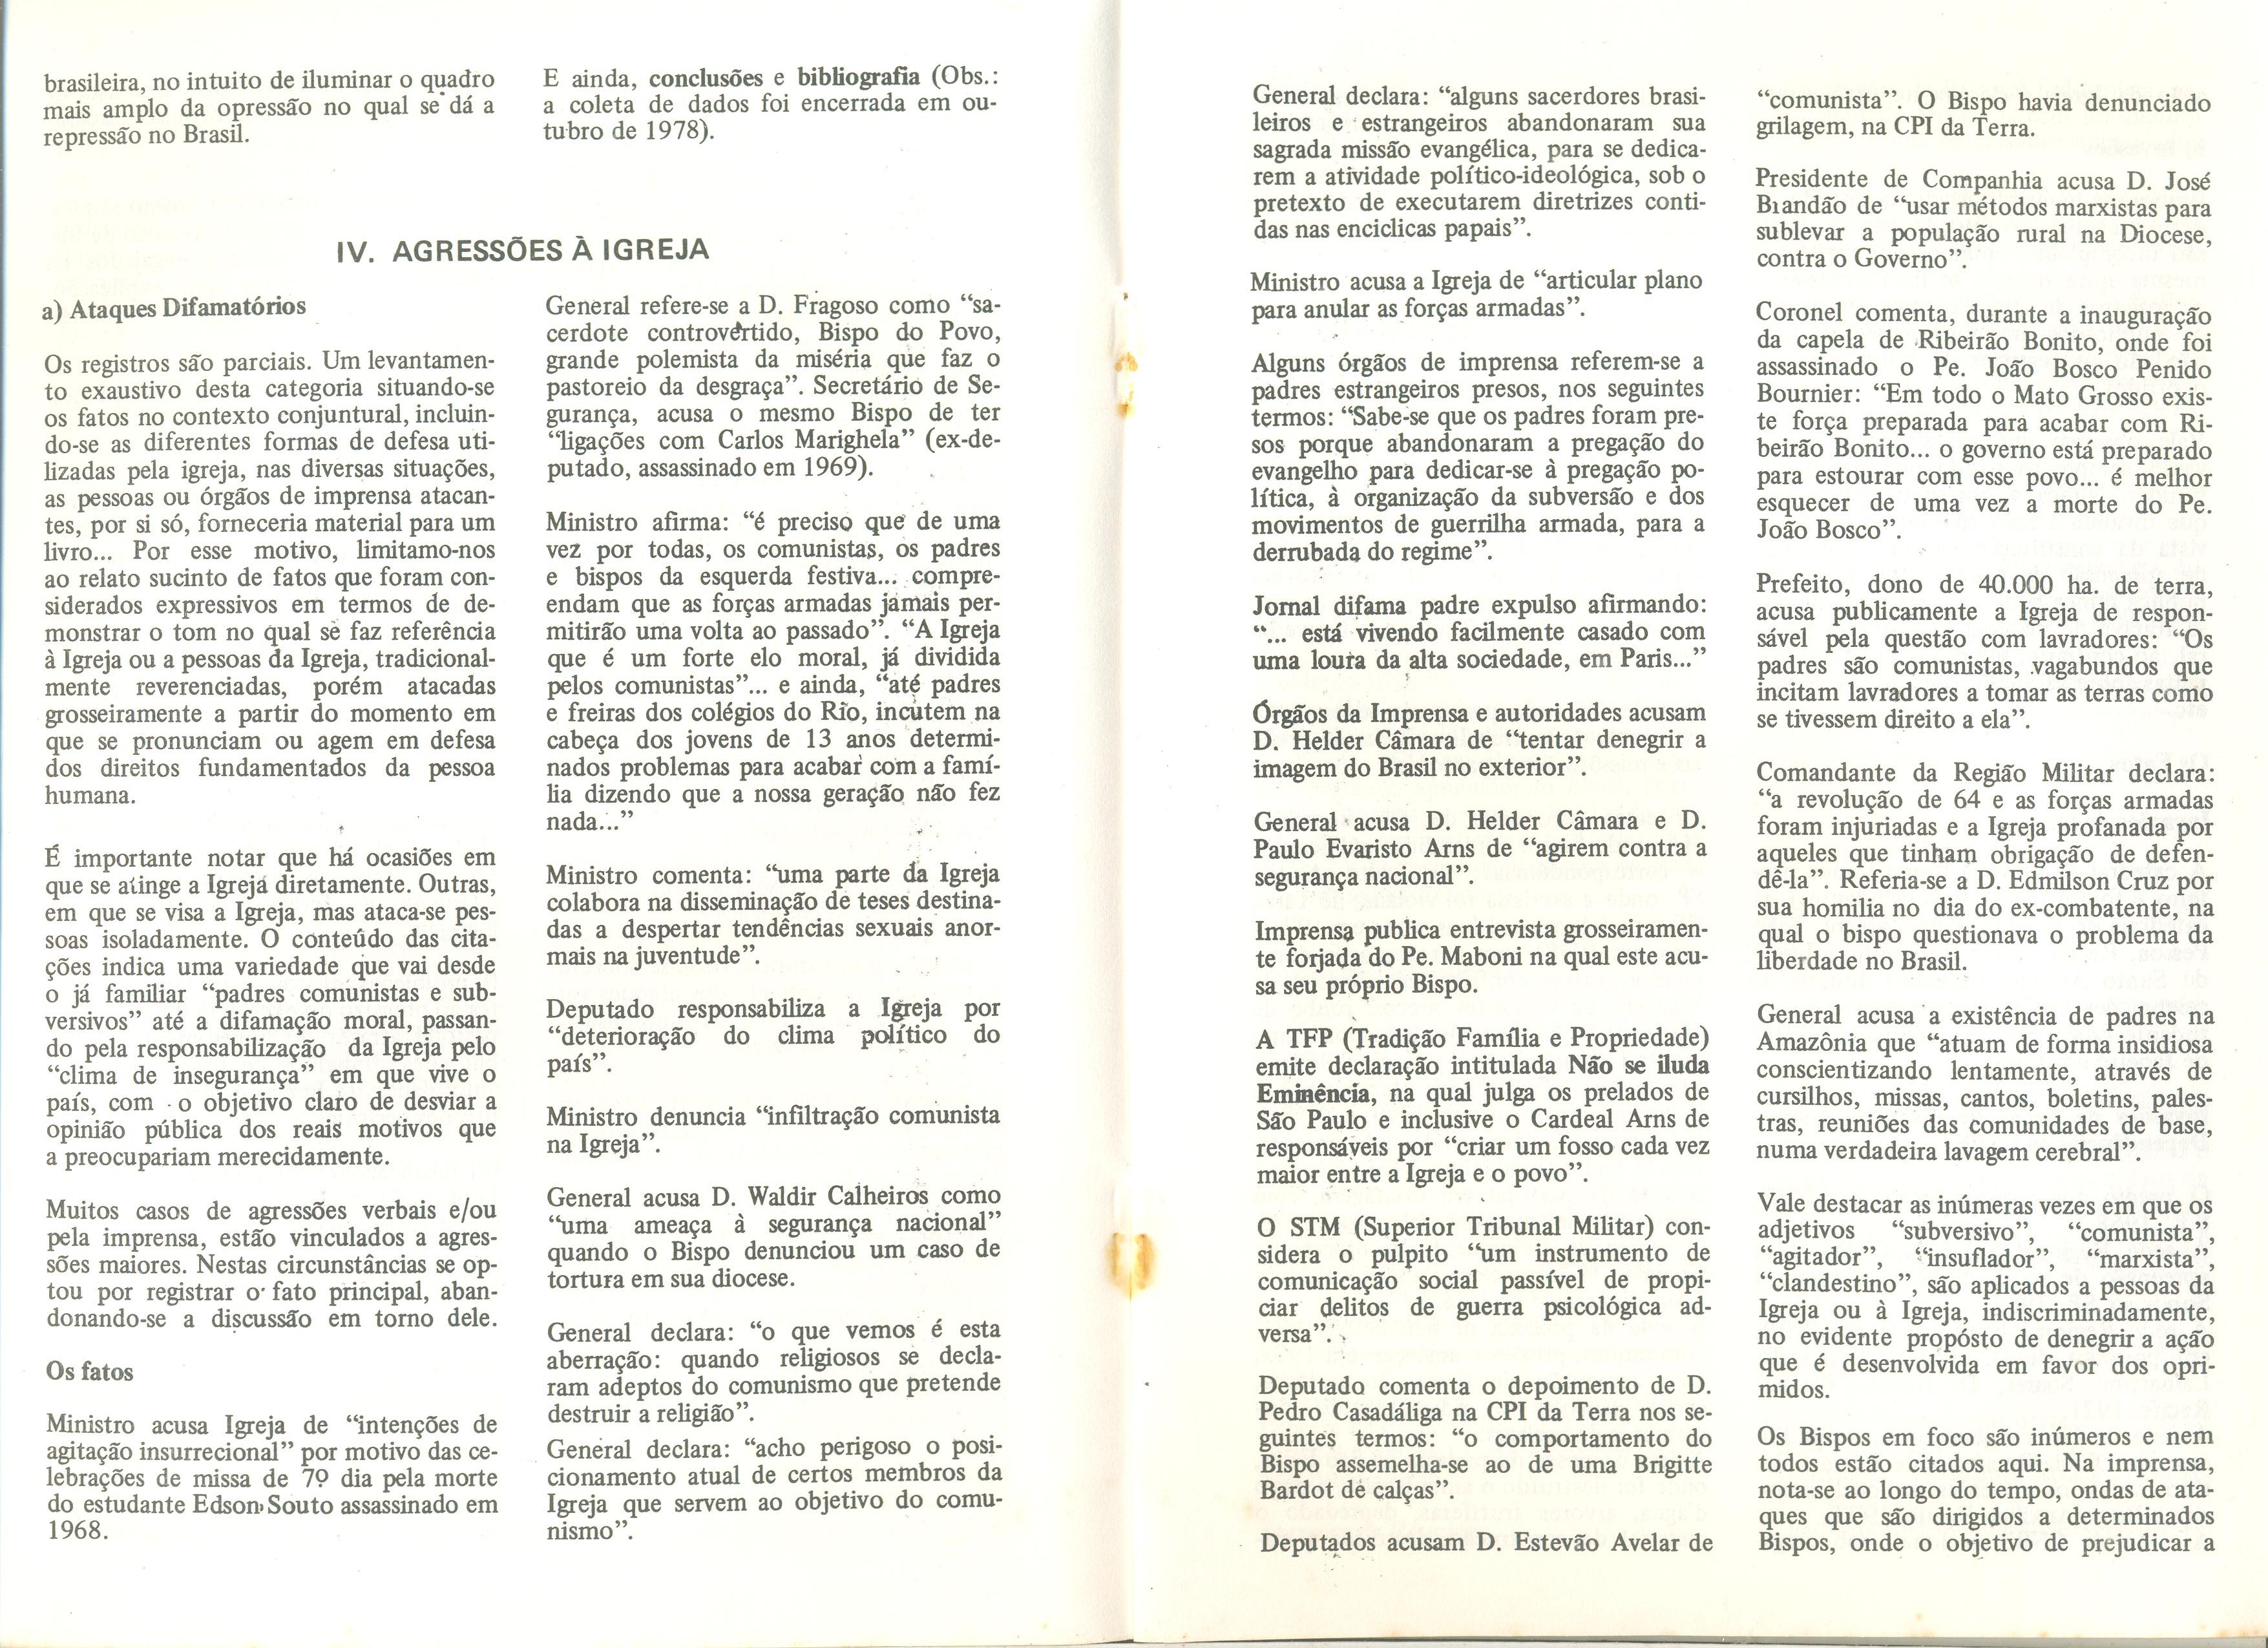 Repressão na Igreja no Brasil: reflexo de uma situação de opressão (1968/1978) (dez. 1978. (arquivo 4))